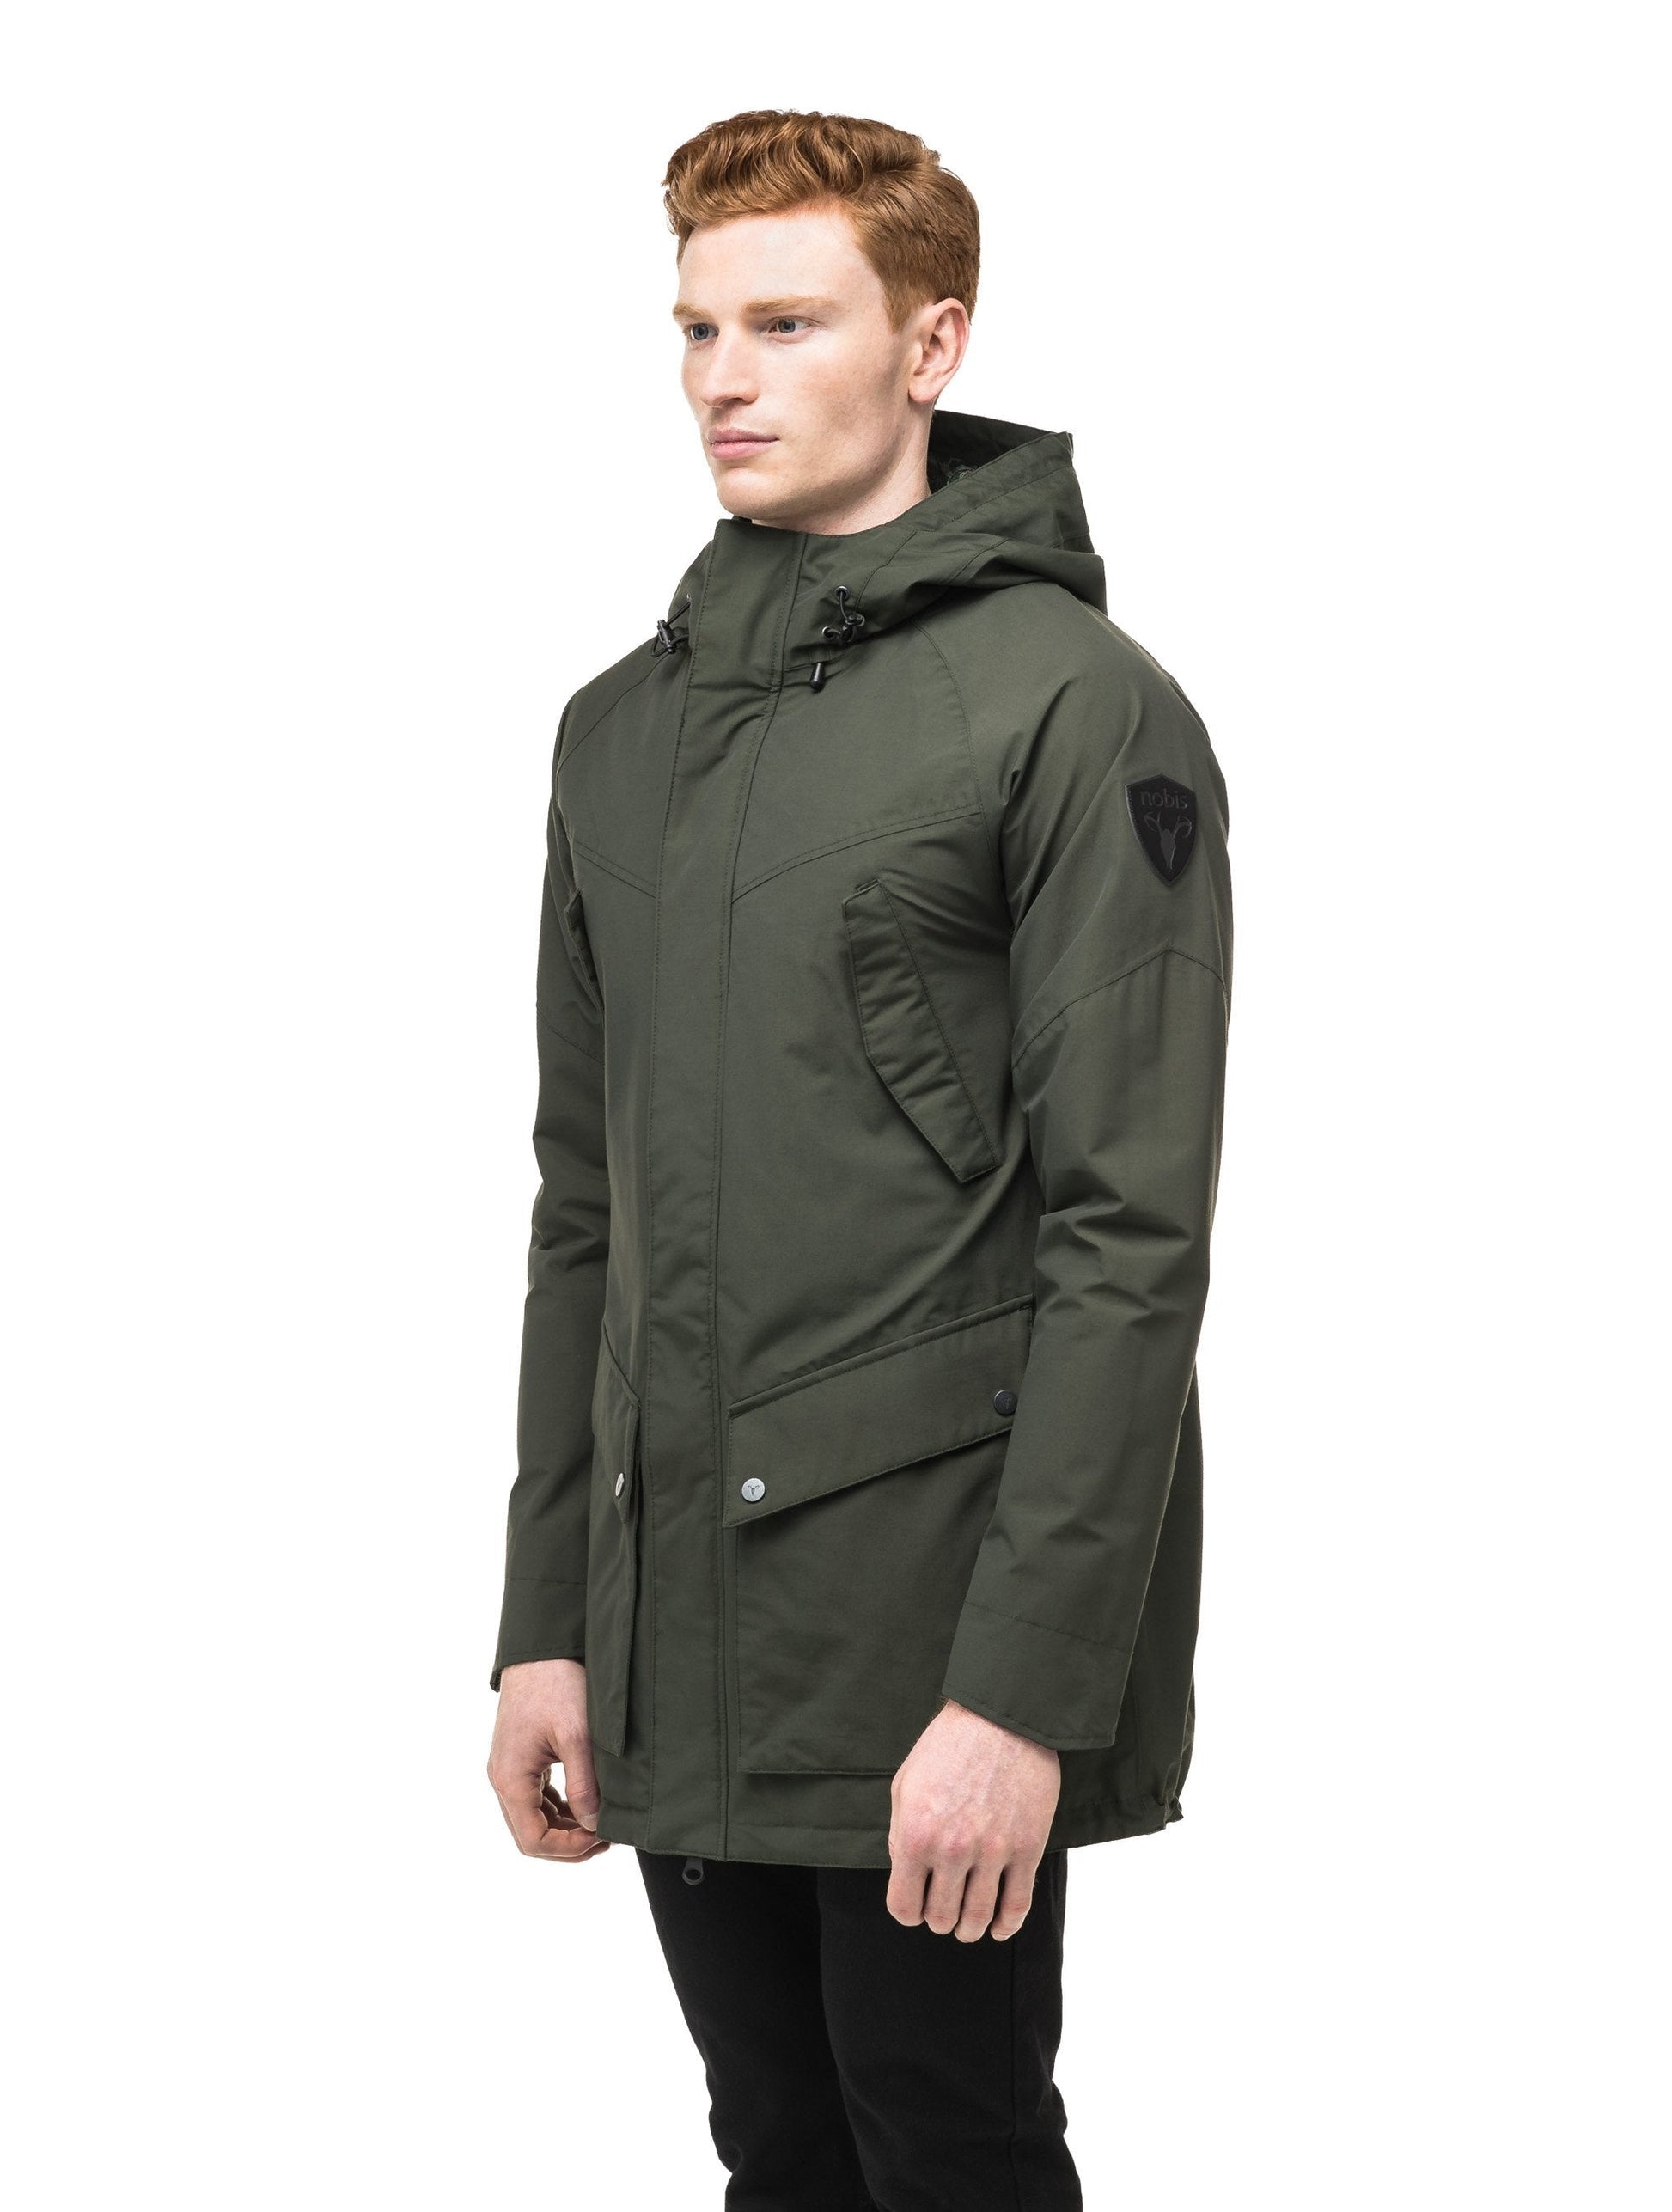 Men's hooded rain coat with hood in Dark Forest